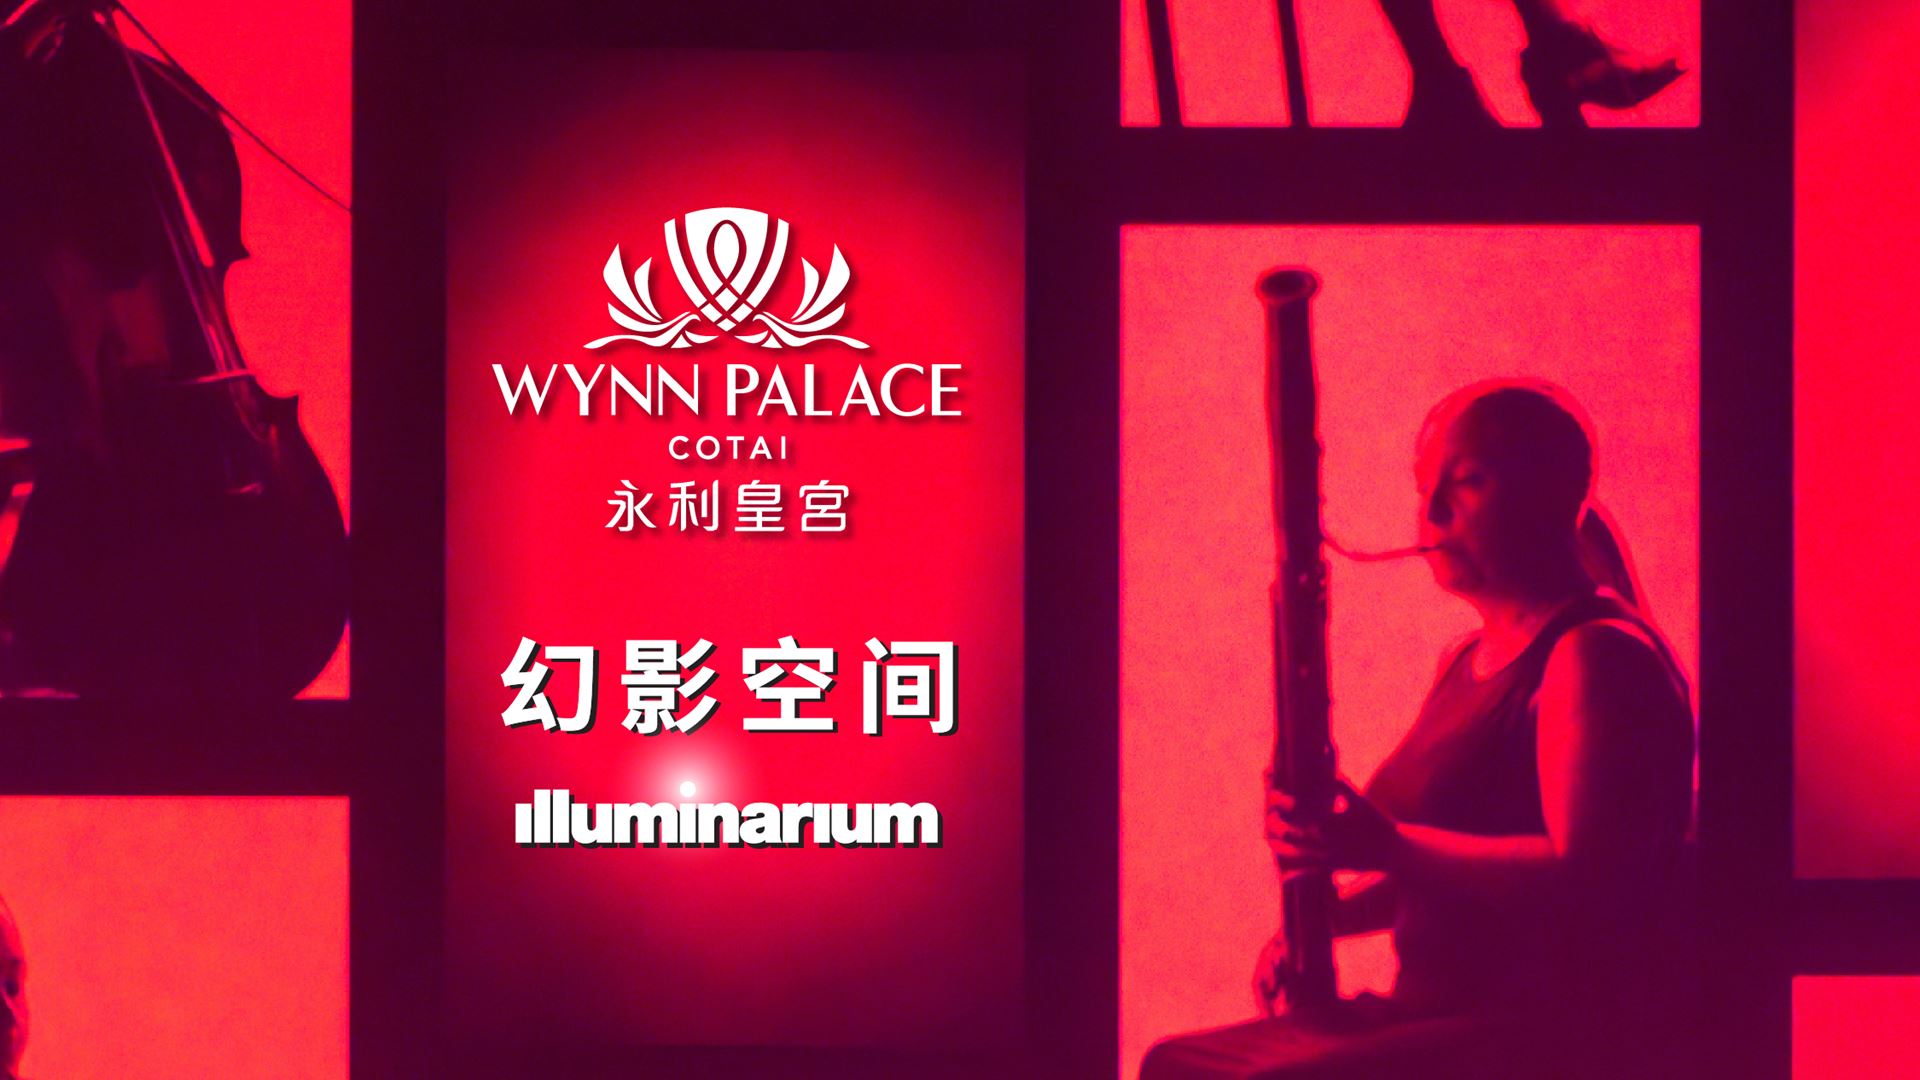 永利皇宫「Illuminarium幻影空间」独家上映以世界经典交响乐打造的《交响绮旅》